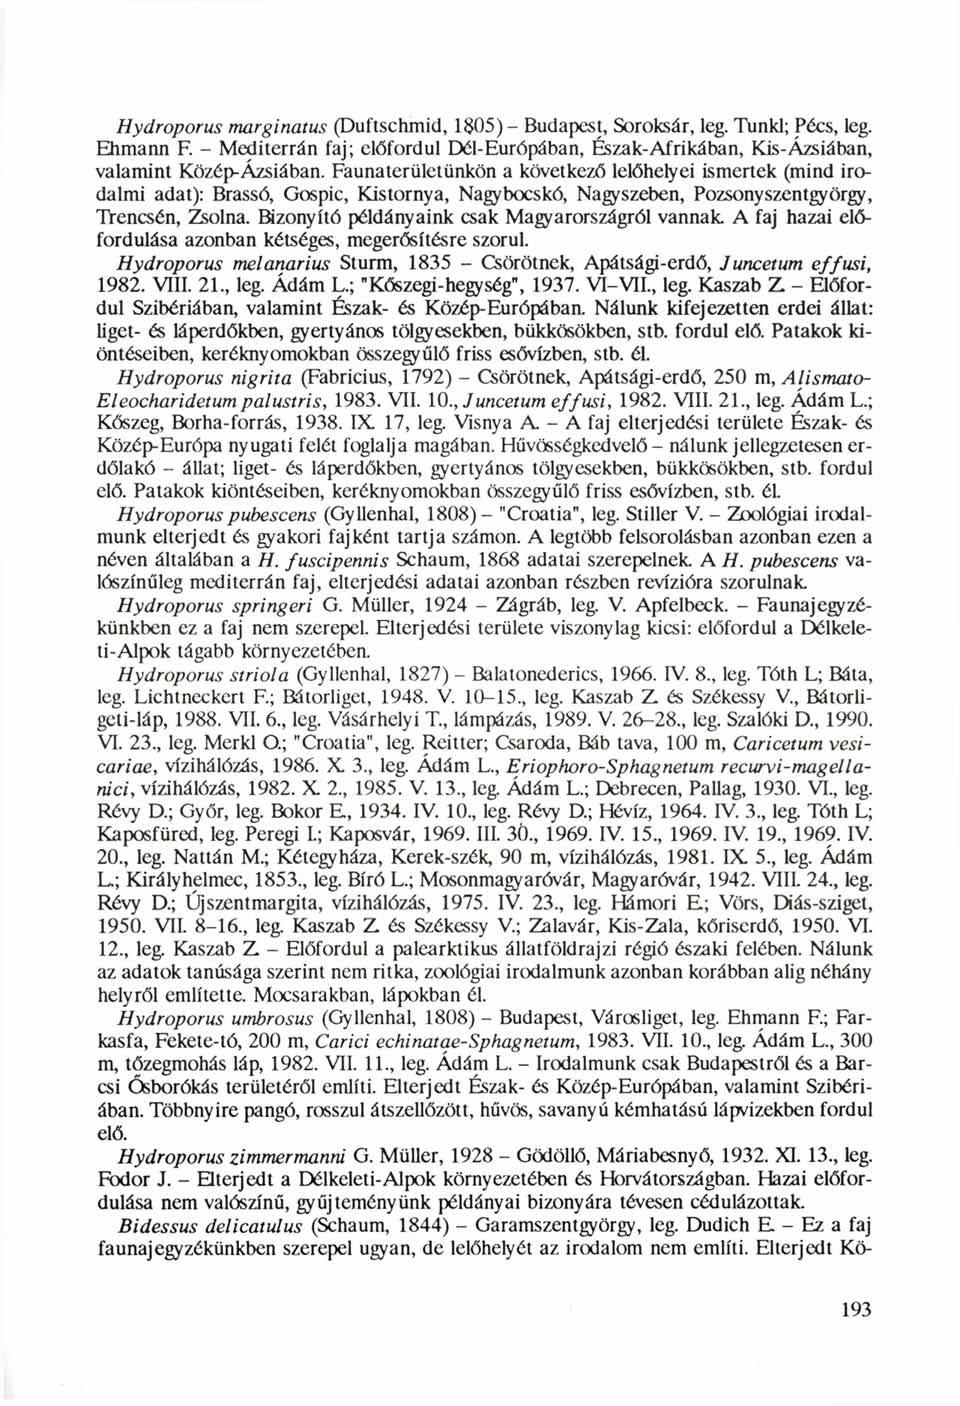 Hydroporus marginatus (Duftschmid, 1$05)- Budapest, Soroksár, leg. Tunkl; Pécs, leg. Ehmann F. - Mediterrán faj; előfordul Dél-Európában, Észak-Afrikában, Kis-Ázsiában, valamint Közép-Ázsiában.